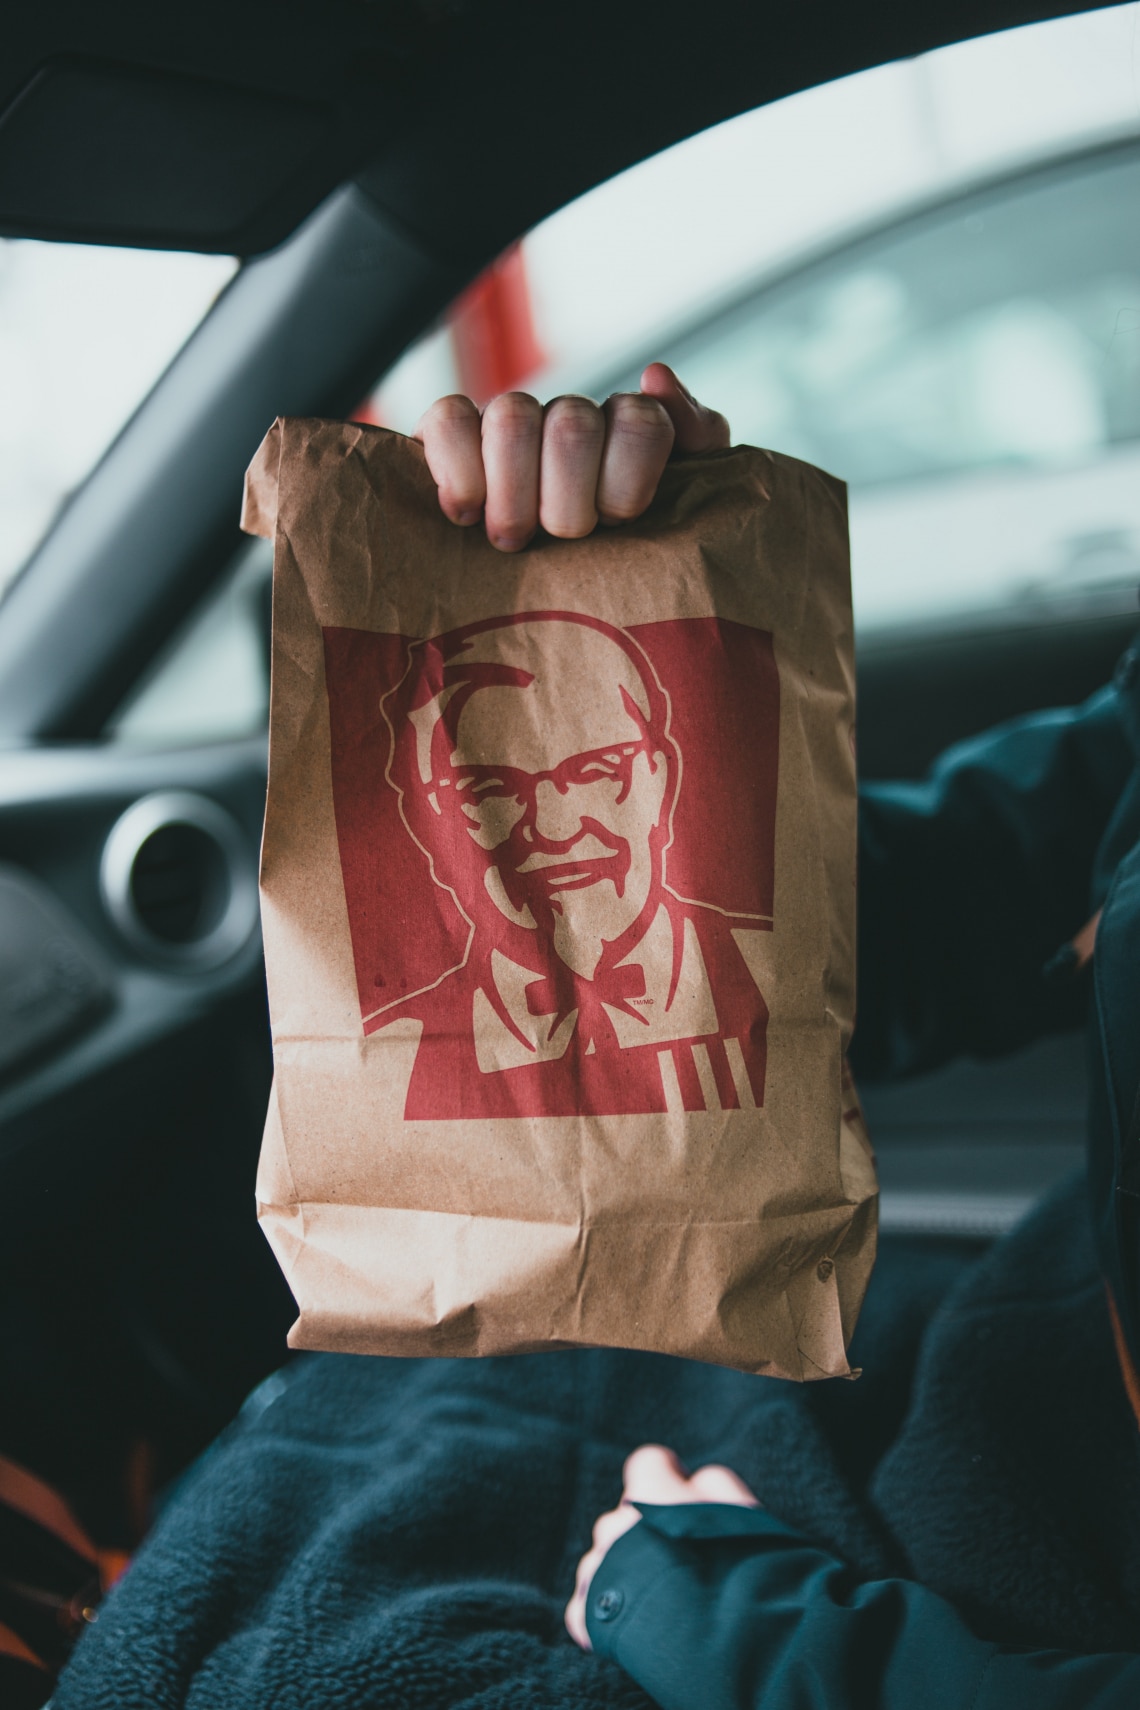 2018-ban az Egyesül Királyságban a KFC kifogyott csirkehúsból